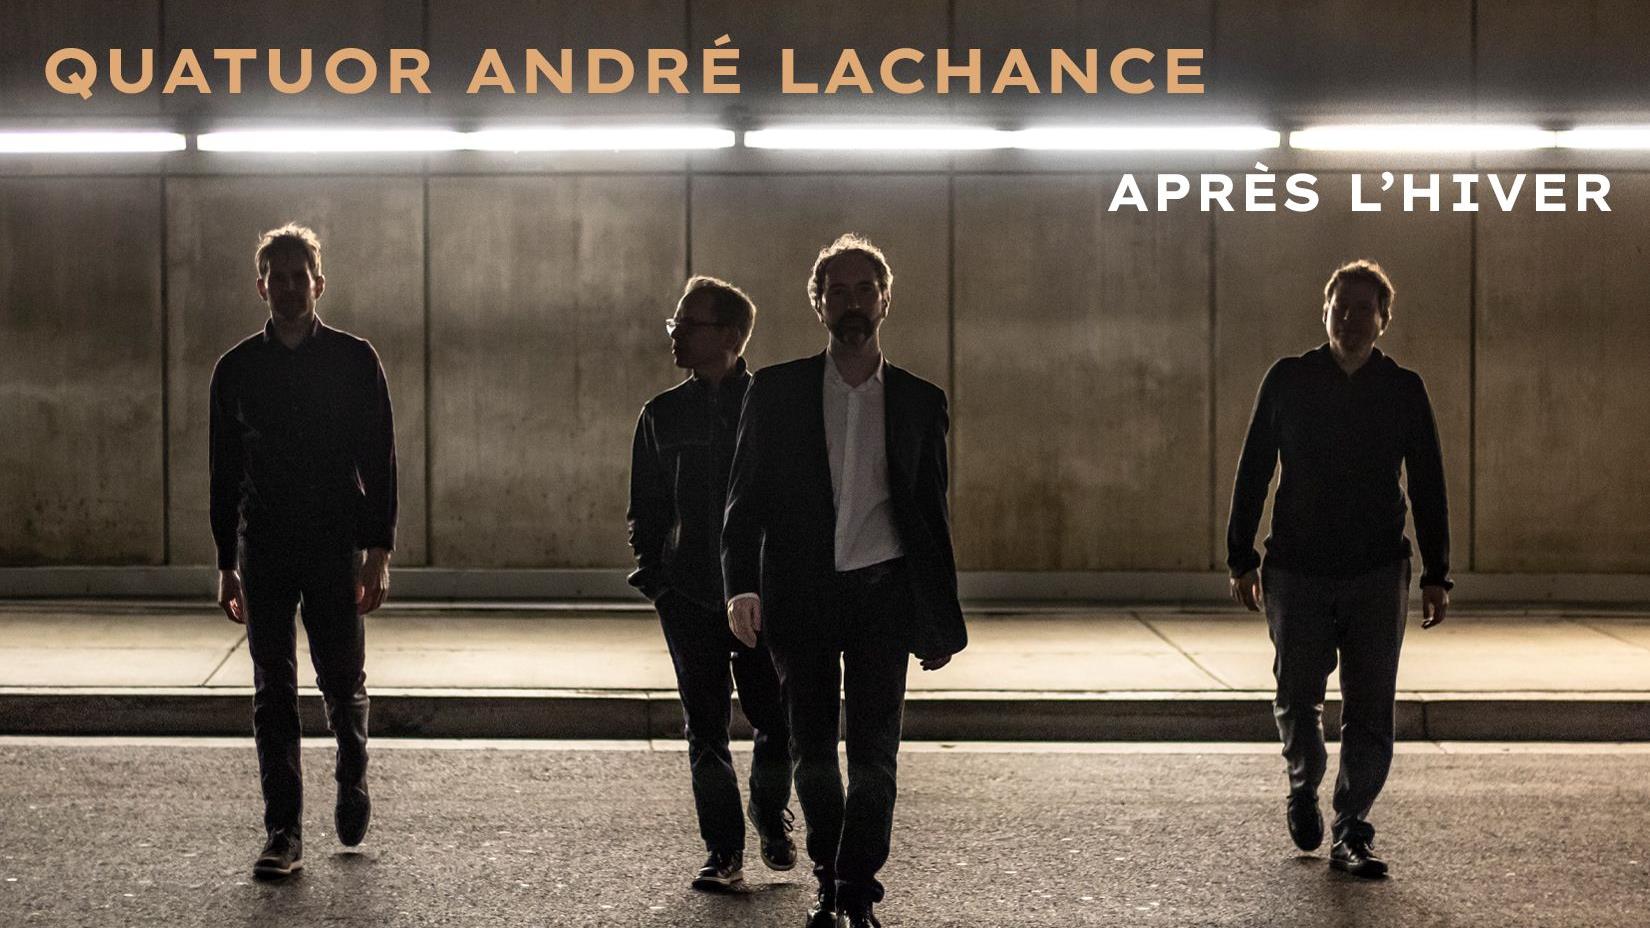 Nouvel album du jazzman André Lachance
Nouvel album du jazzman André Lachance